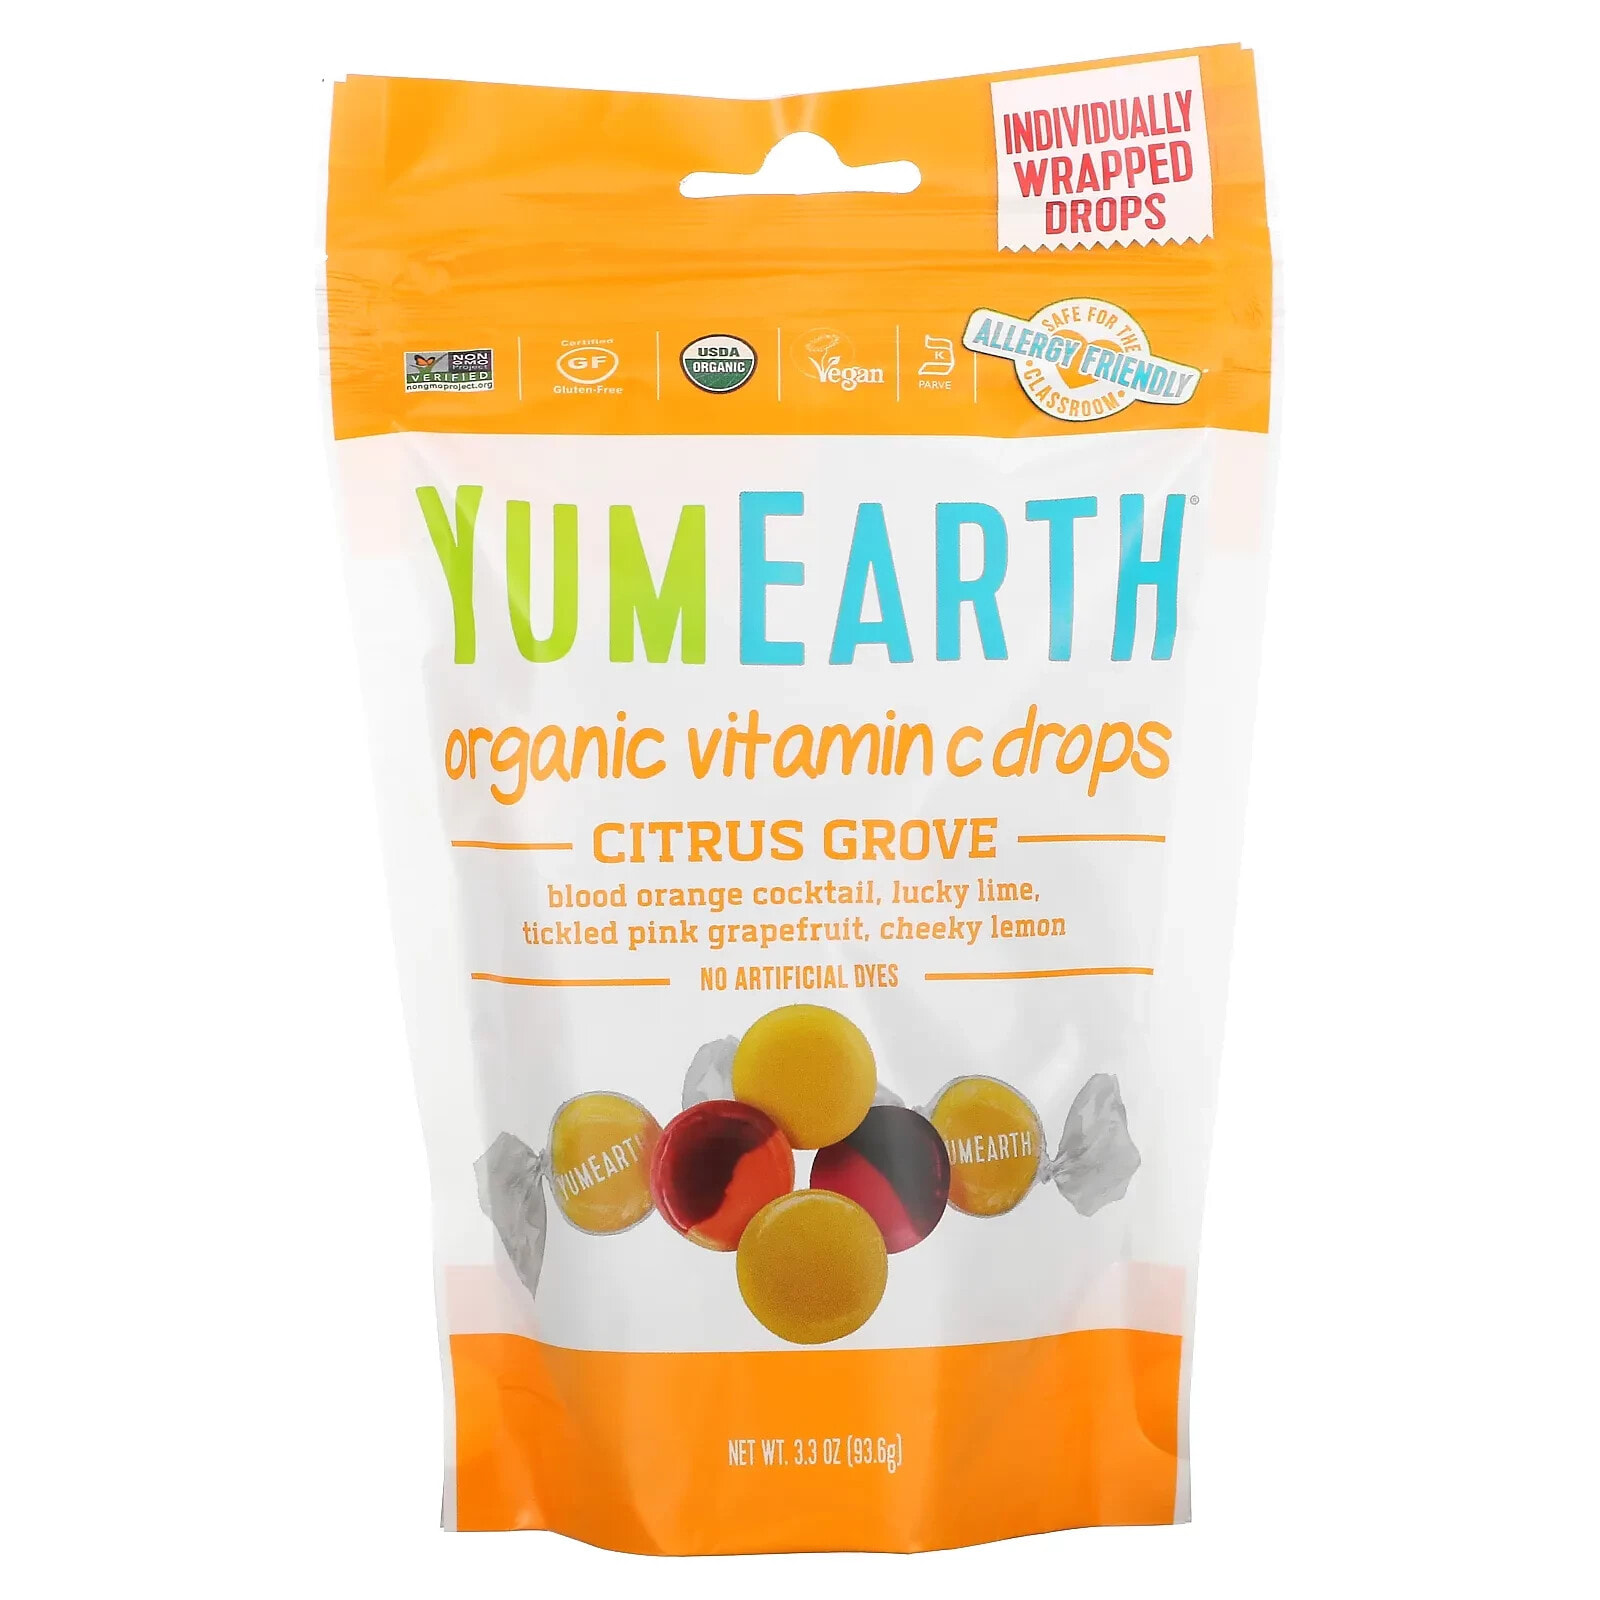 YumEarth, Органические леденцы с витамином С, Anti-Oxifruits, 93,6 г (3,3 унции)